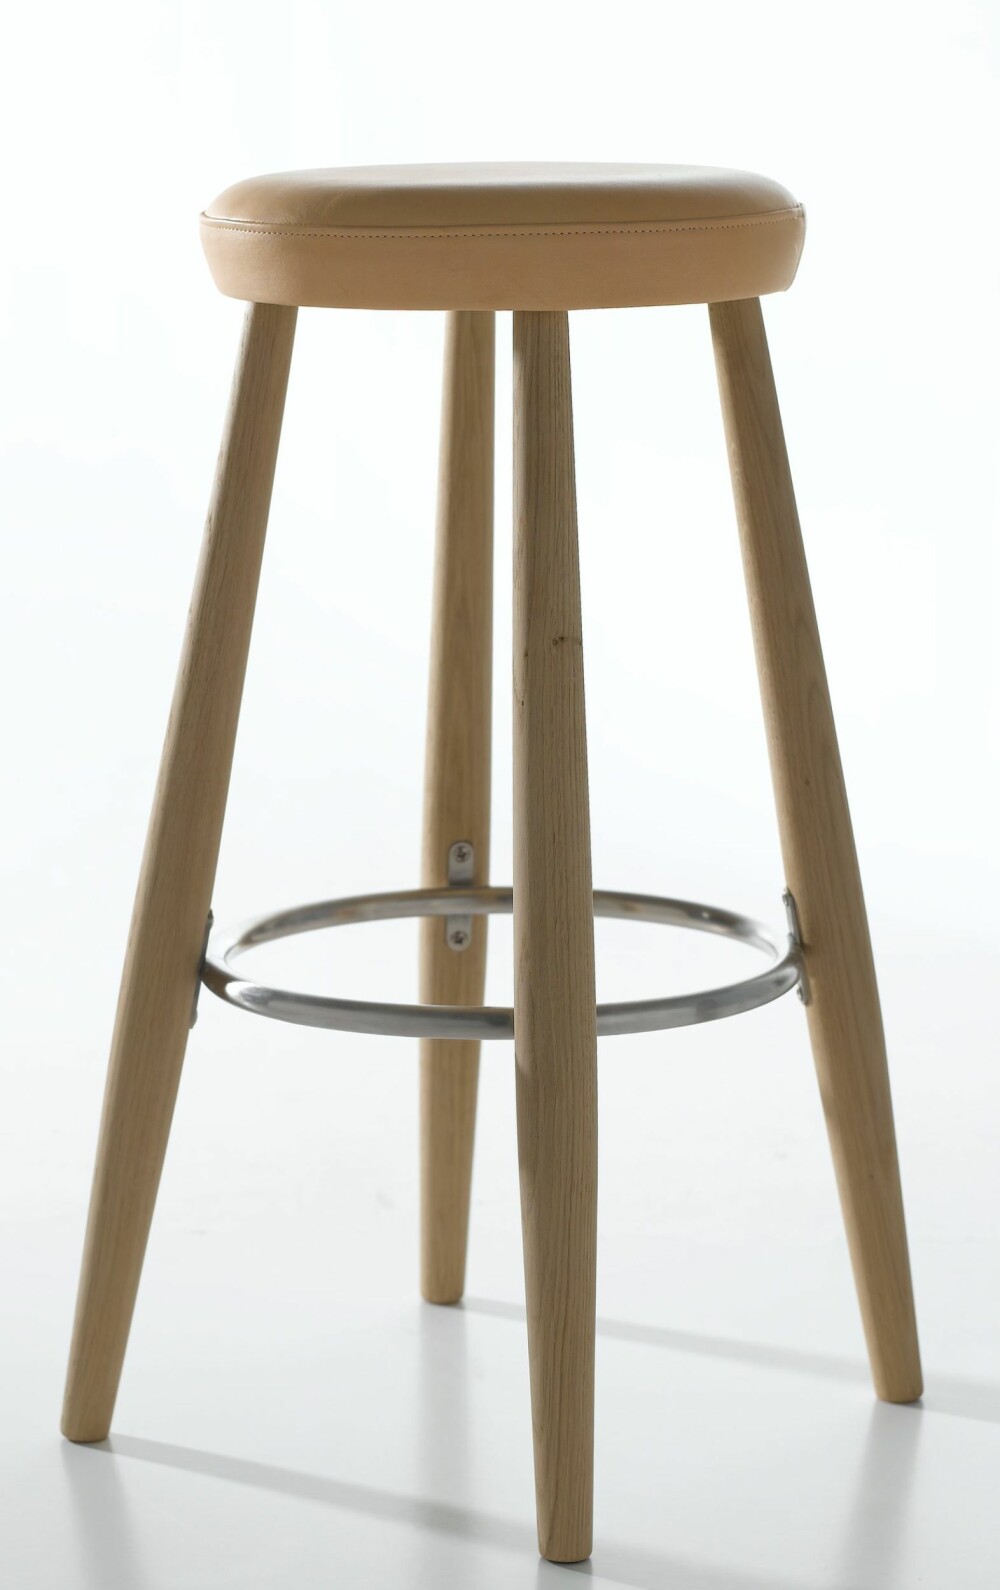 SETESKINN: En klassisk barstol med aktuell skinndetalj. Barstol CH58 har sete i gyllent lær, design Hans J. Wegner, kr 5780, Carl Hansen